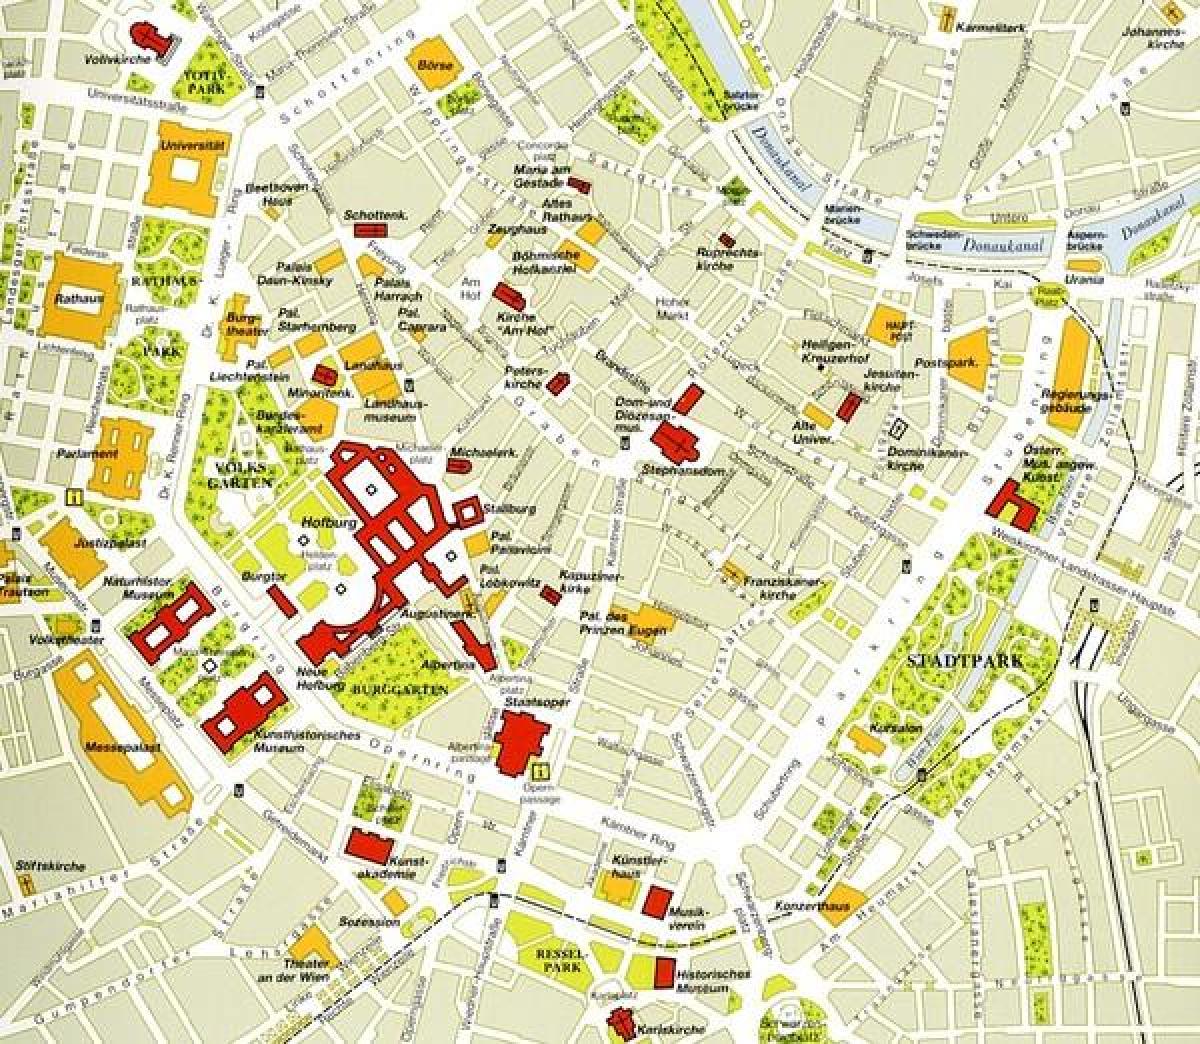 Viena centro histórico mapa